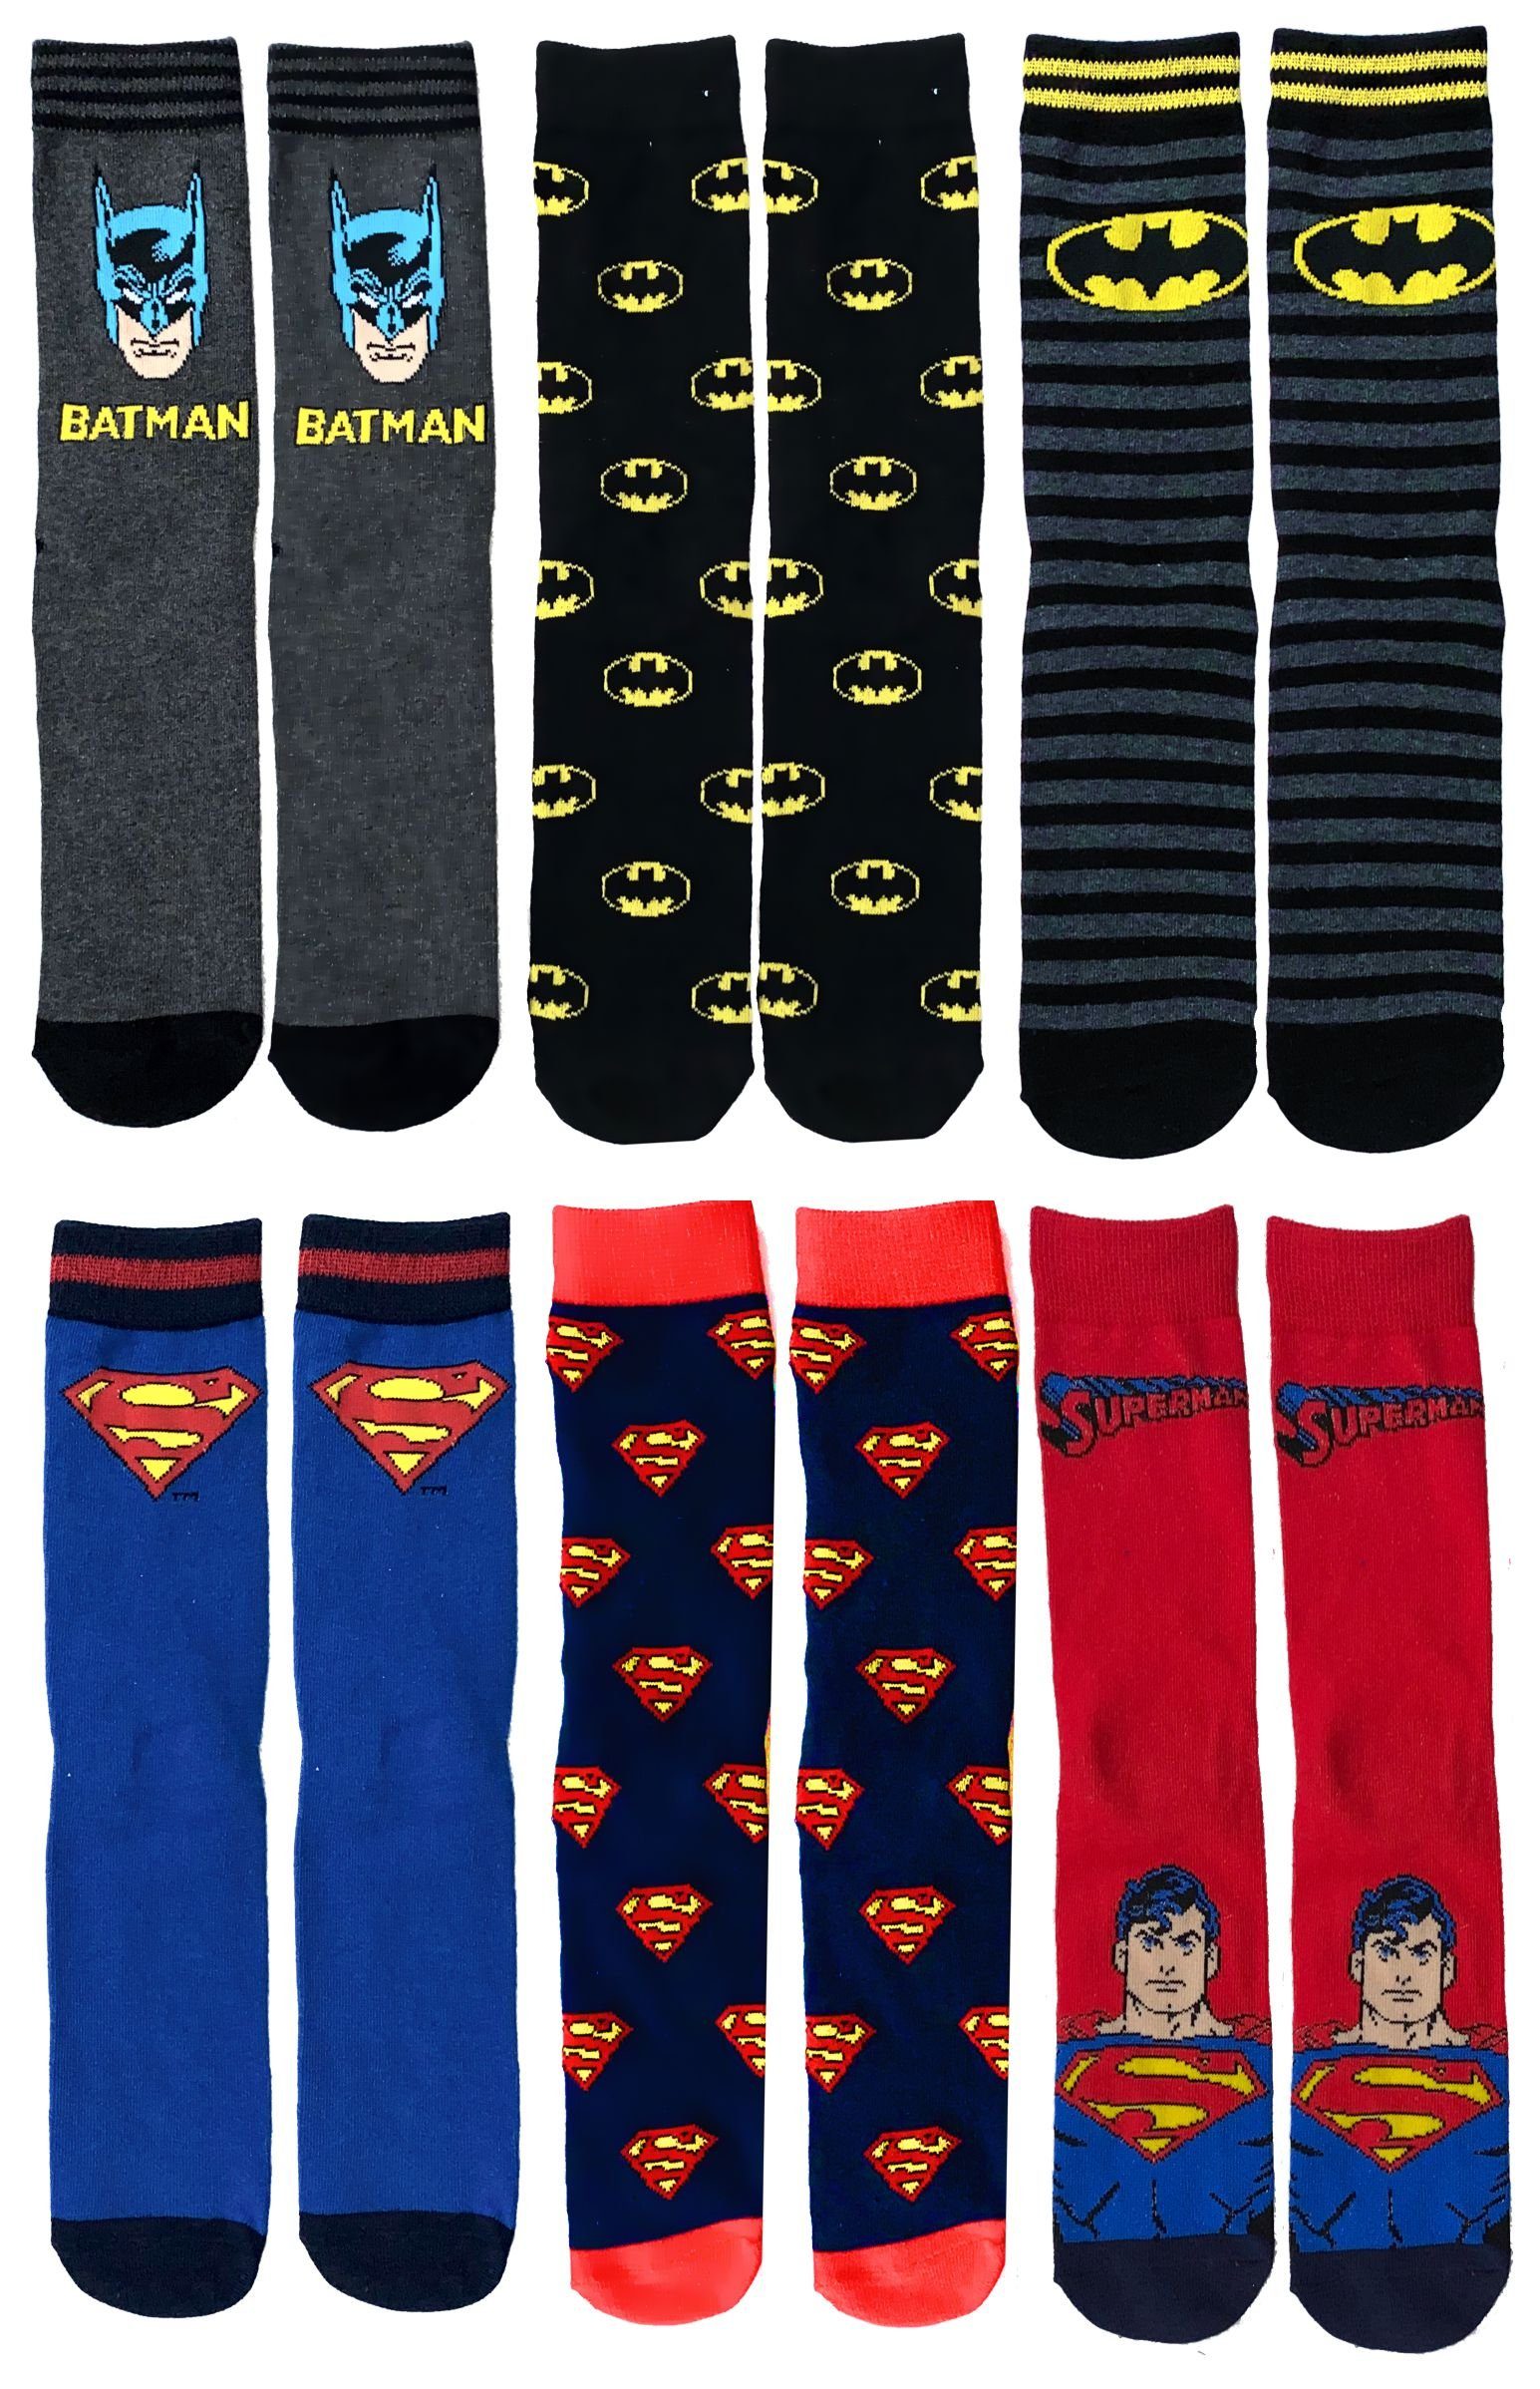 Superman Kindersocken + 38/40 und Batman Strümpfe Set Socken 3er Gr.35/37 Jugendliche Freizeitsocken Kinder Batman